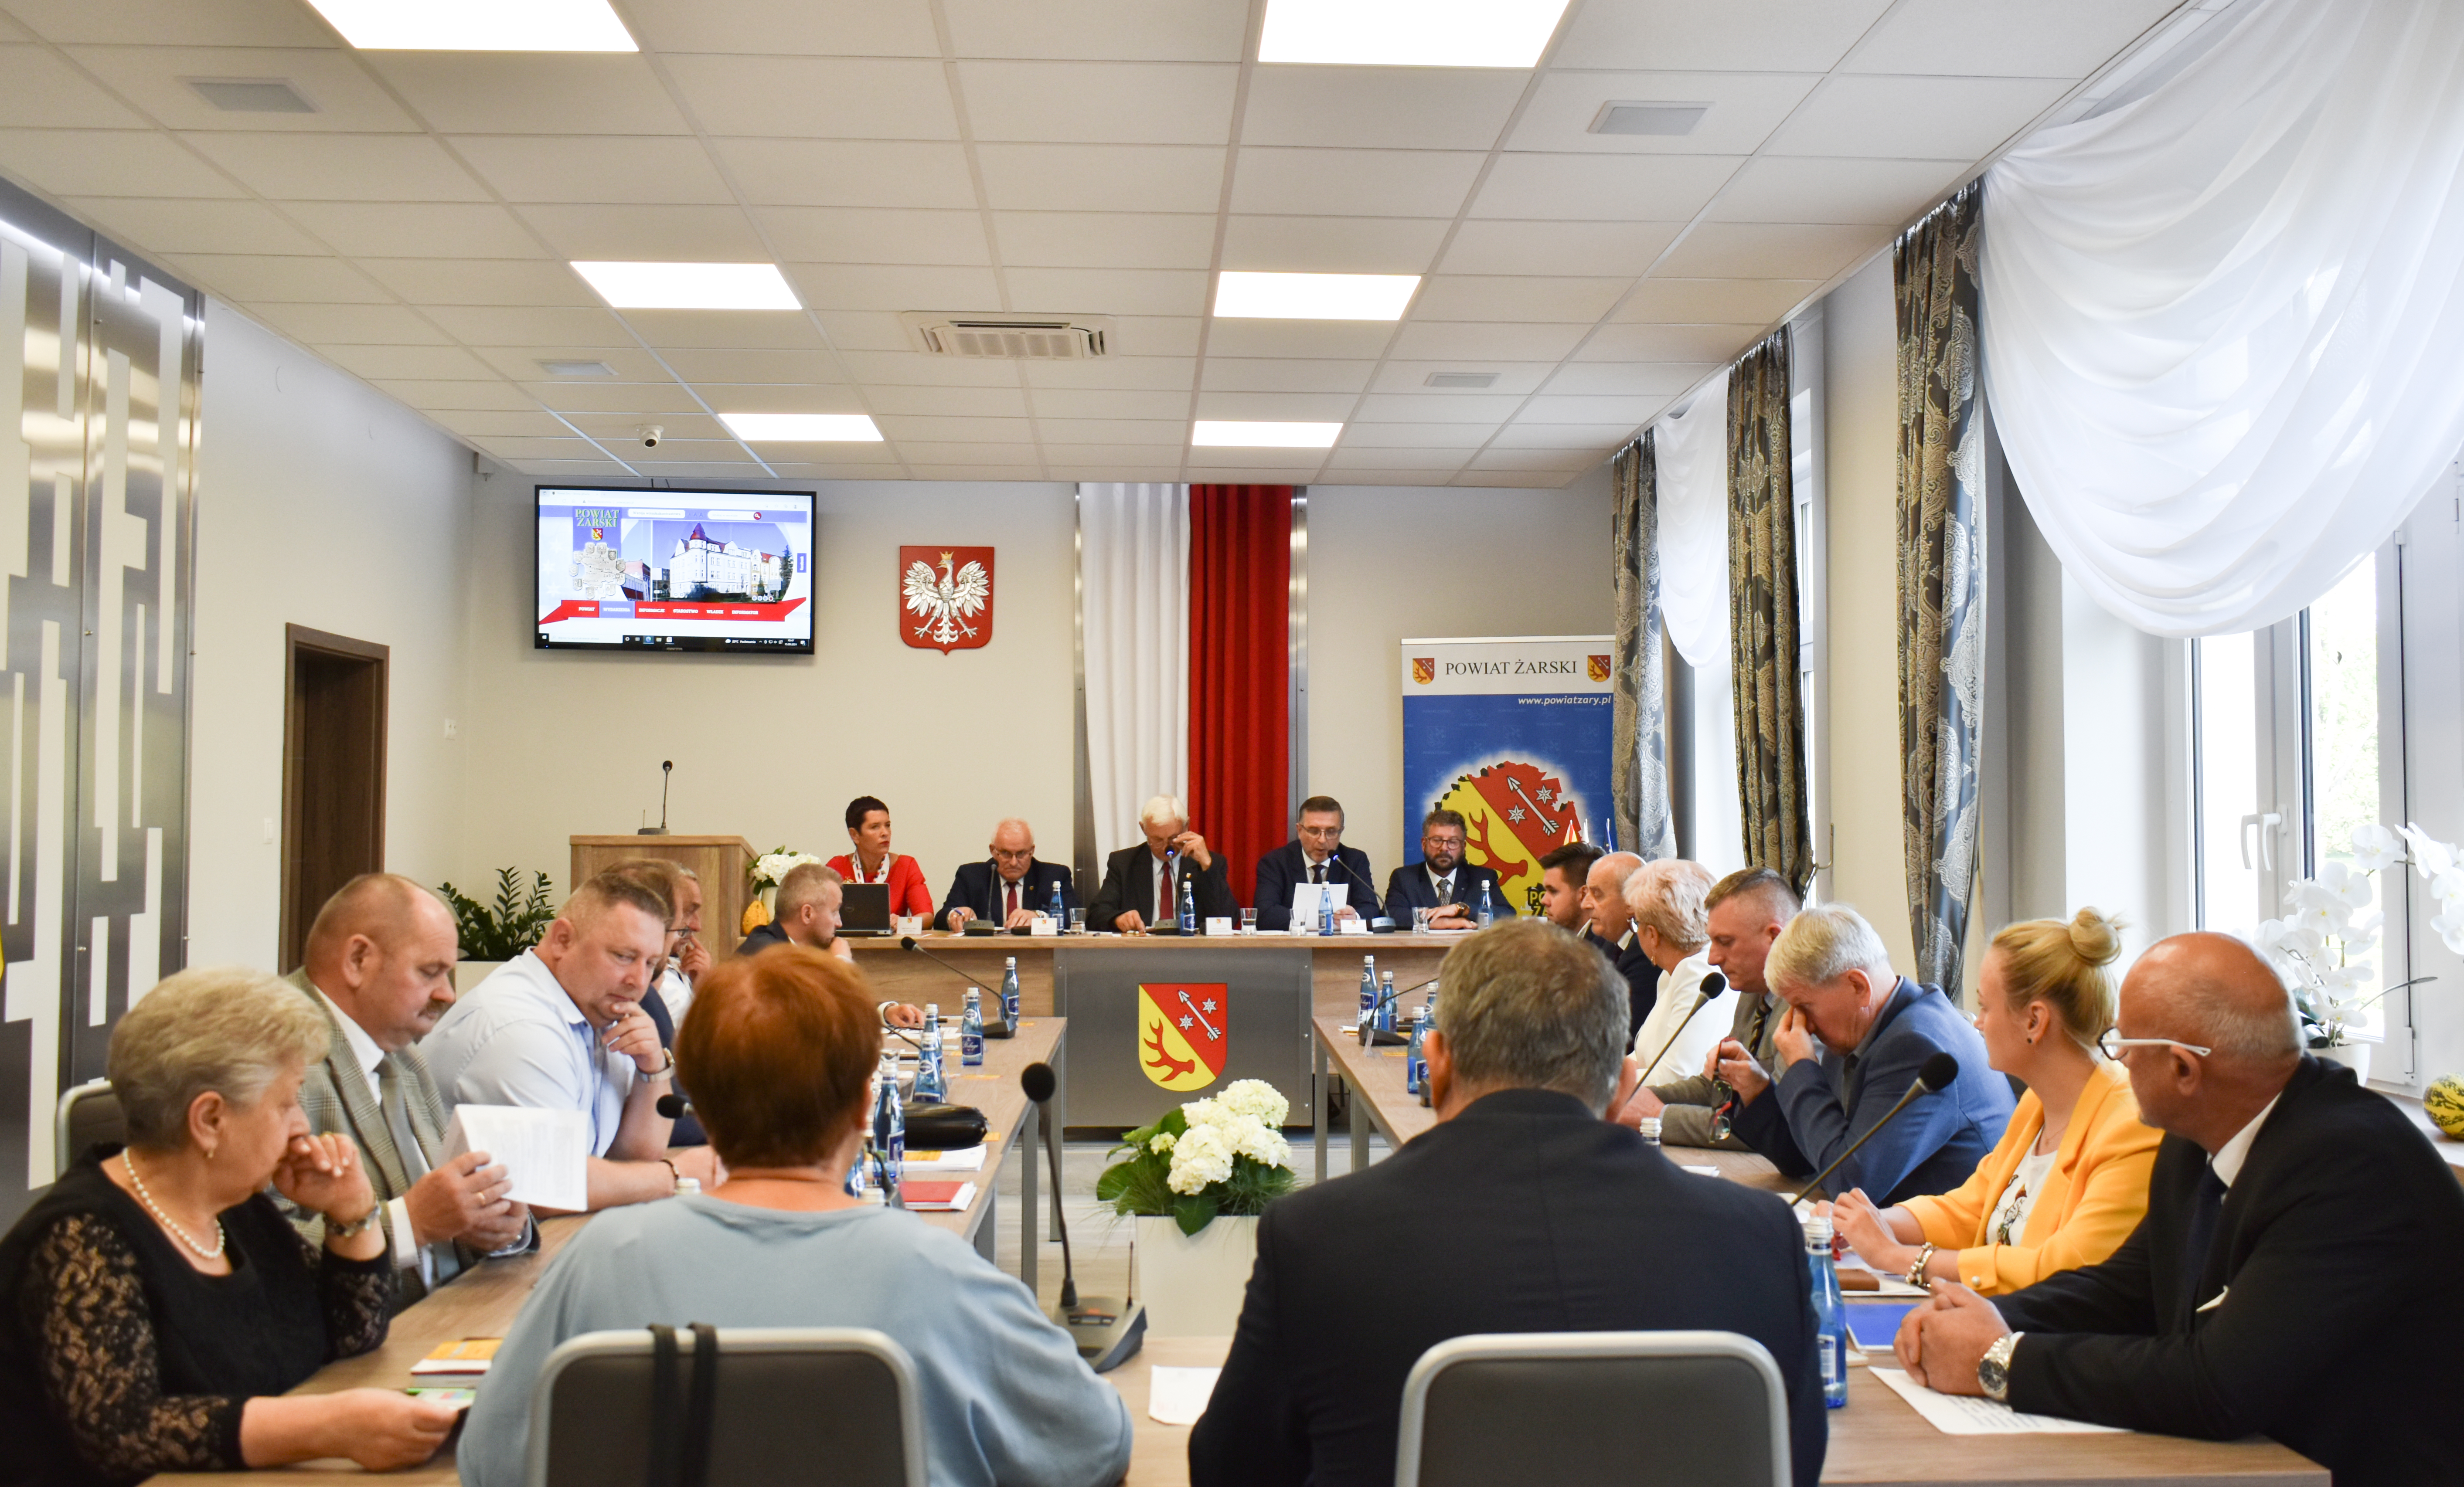 Ilustracja do informacji: Nadzwyczajna sesja Rady Powiatu Żarskiego